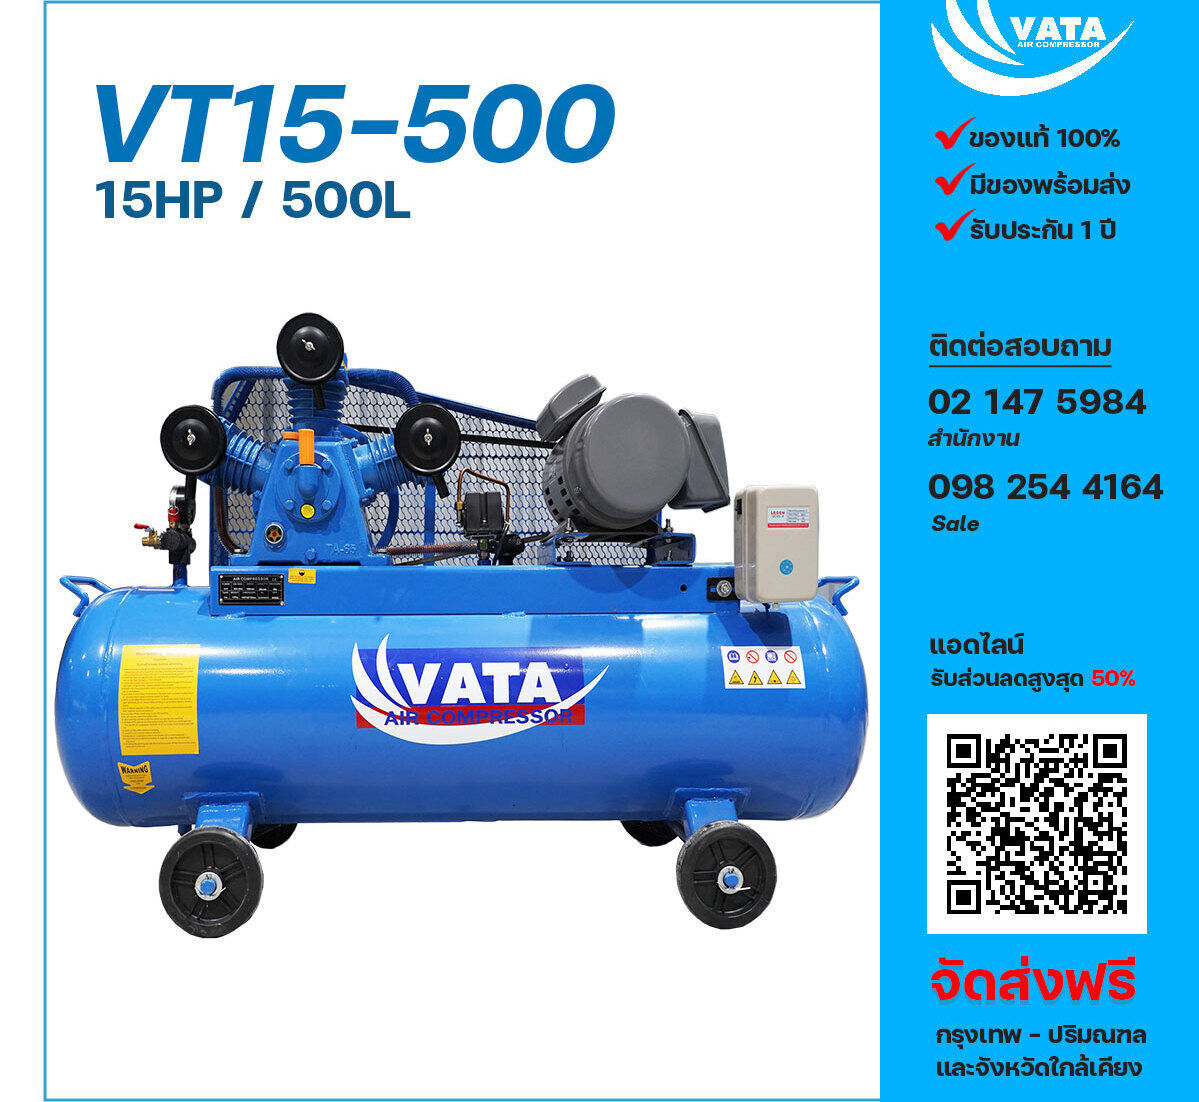 ปั๊มลมวาตะ VATA VT15-500 380V ปั๊มลมลูกสูบ ขนาด 3 สูบ 15 แรงม้า 500 ลิตร VATA พร้อมมอเตอร์ ไฟ 380V ส่งฟรี กรุงเทพฯ-ปริมณฑล รับประกัน 1 ปี